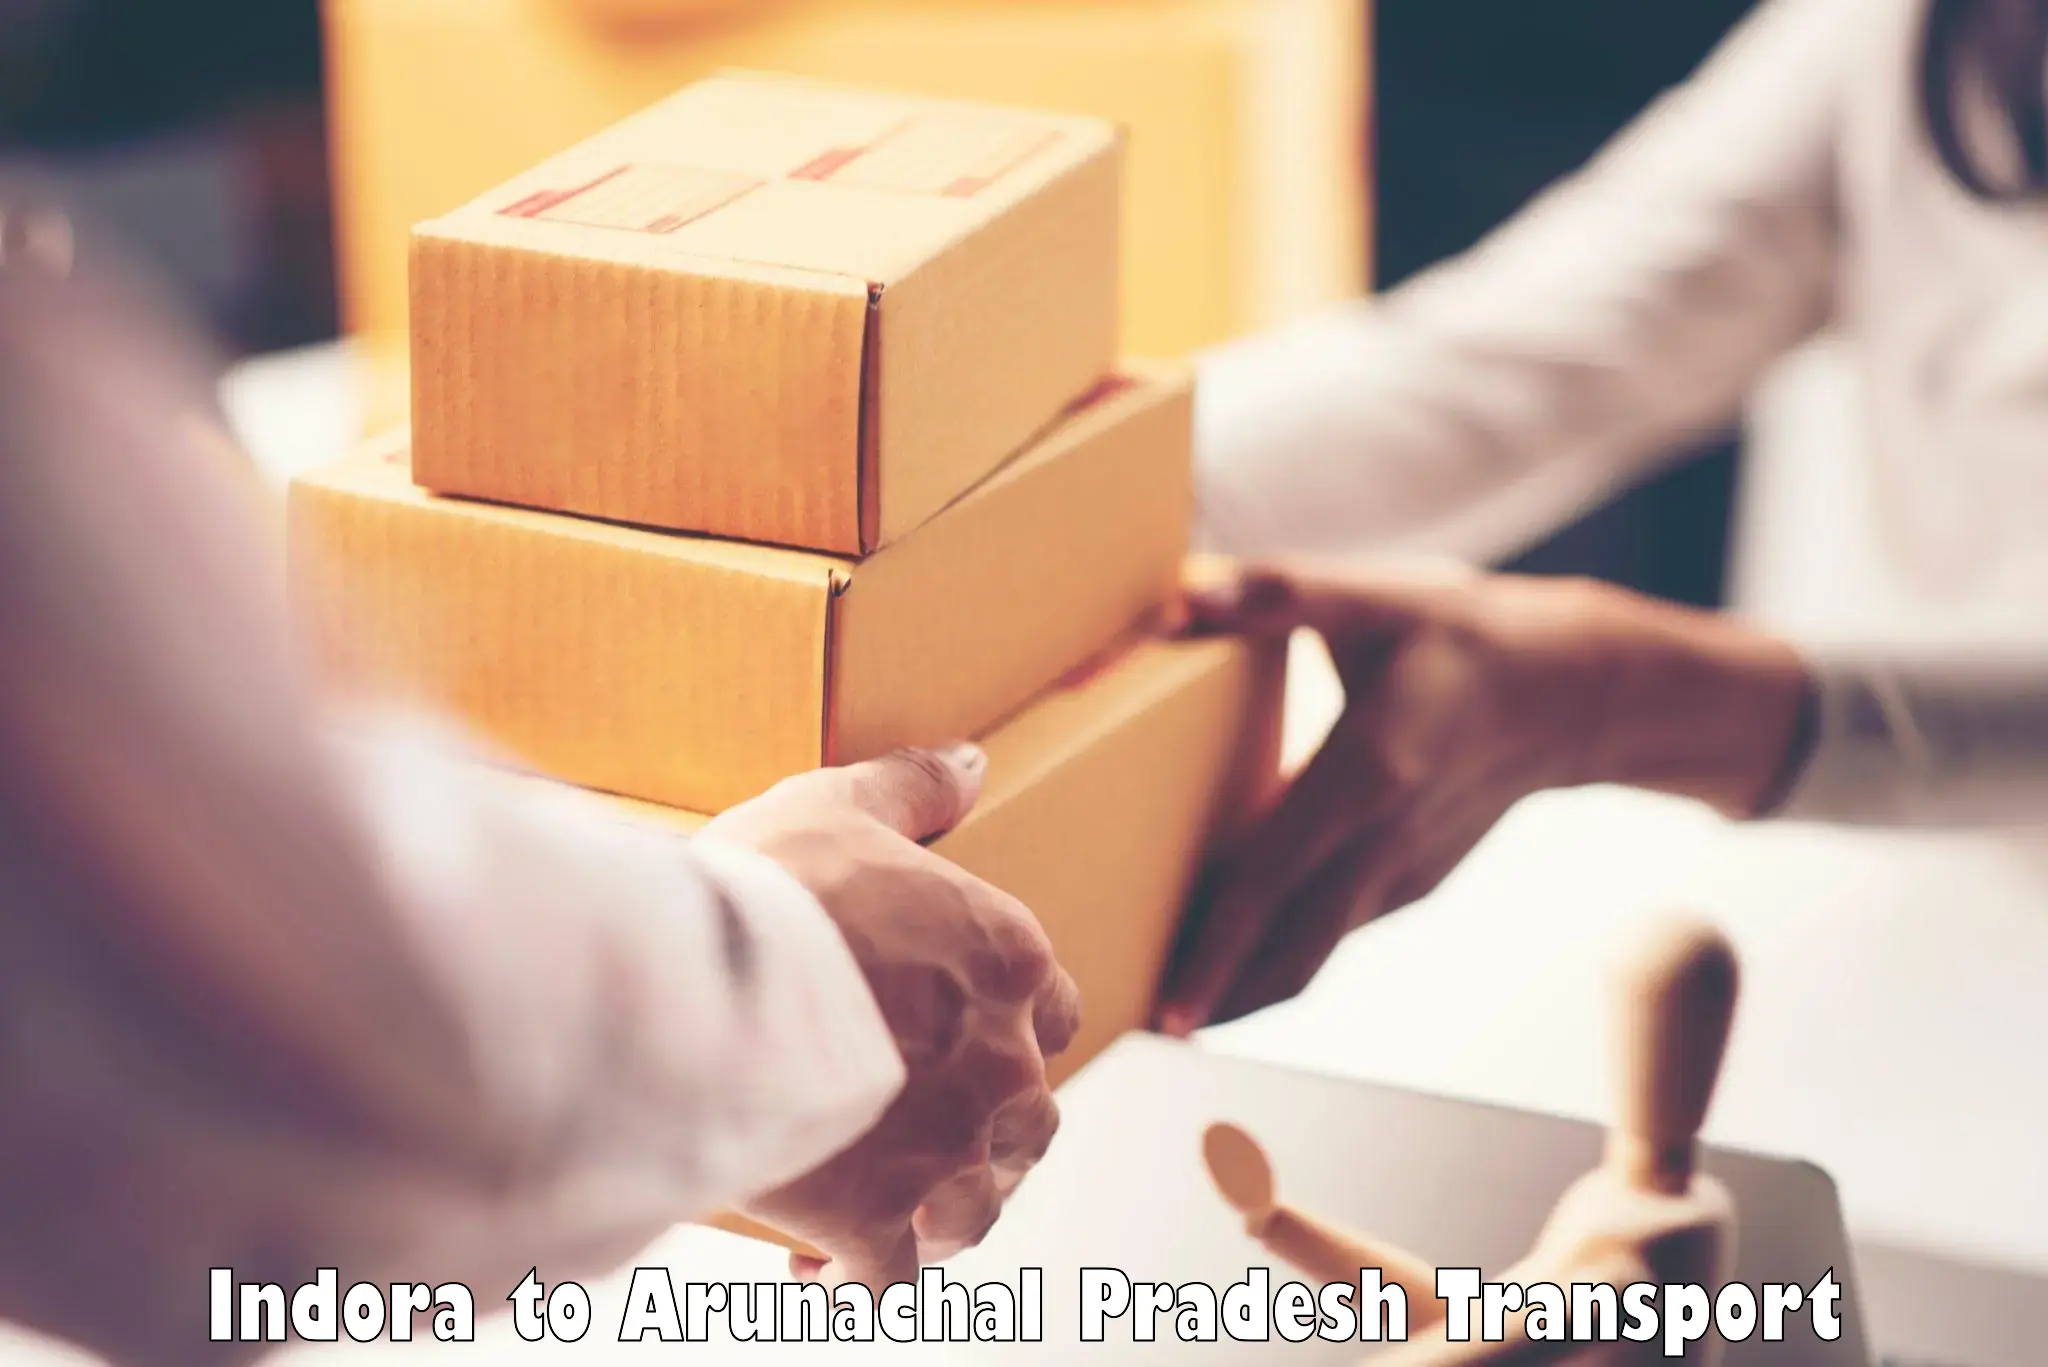 Cargo transport services in Indora to Itanagar